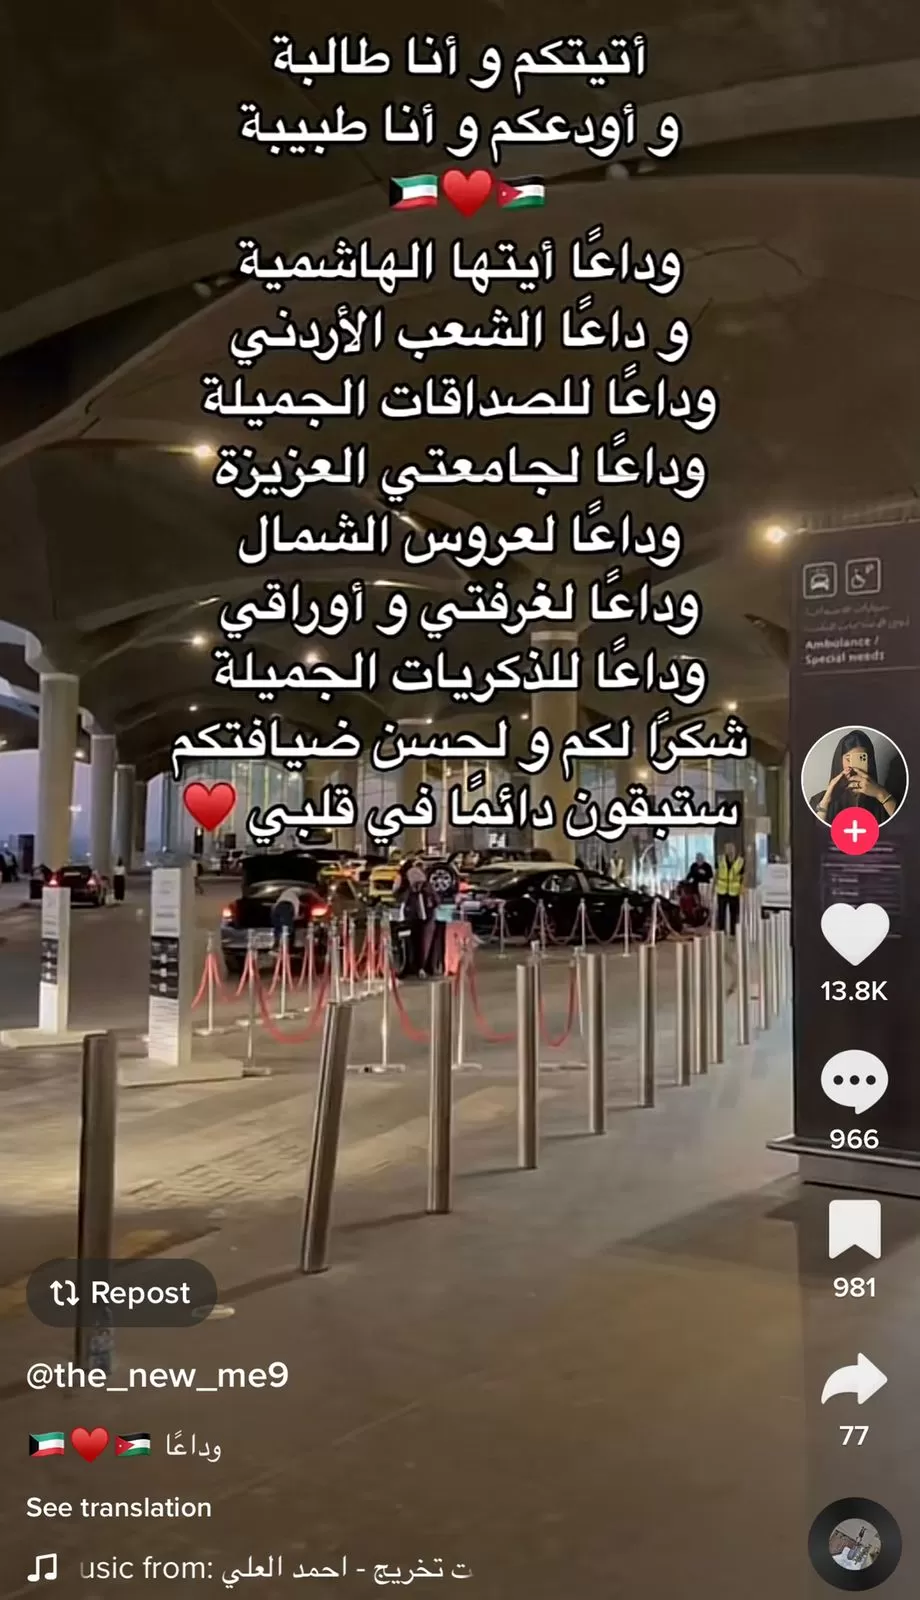 الأردن,مطار الملكة علياء,الكويت,جامعة العلوم والتكنولوجيا,إربد,